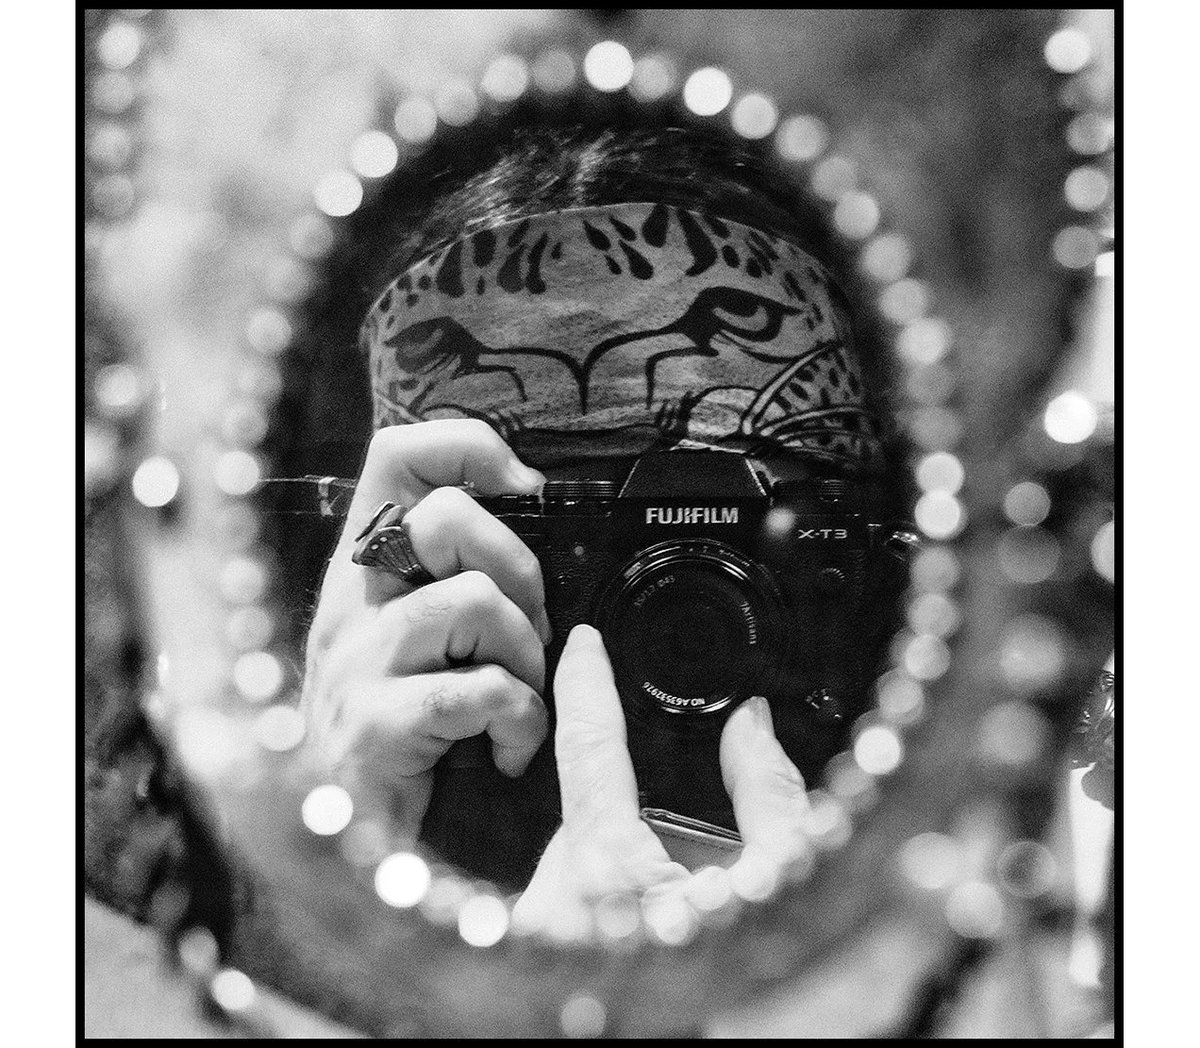 EGO PORTRAIT 18
.
#portrait #capture #oneshot #photoobserve #reflection #reflet #noiretblanc #monochrome #bnw #bnwphoto #bnwphotography #blacknwhite #blackandwhite #bw #bwphotography #blackandwhitephotography #black_and_white #selfie #selfportrait #autoportrait #stephanealfonsi